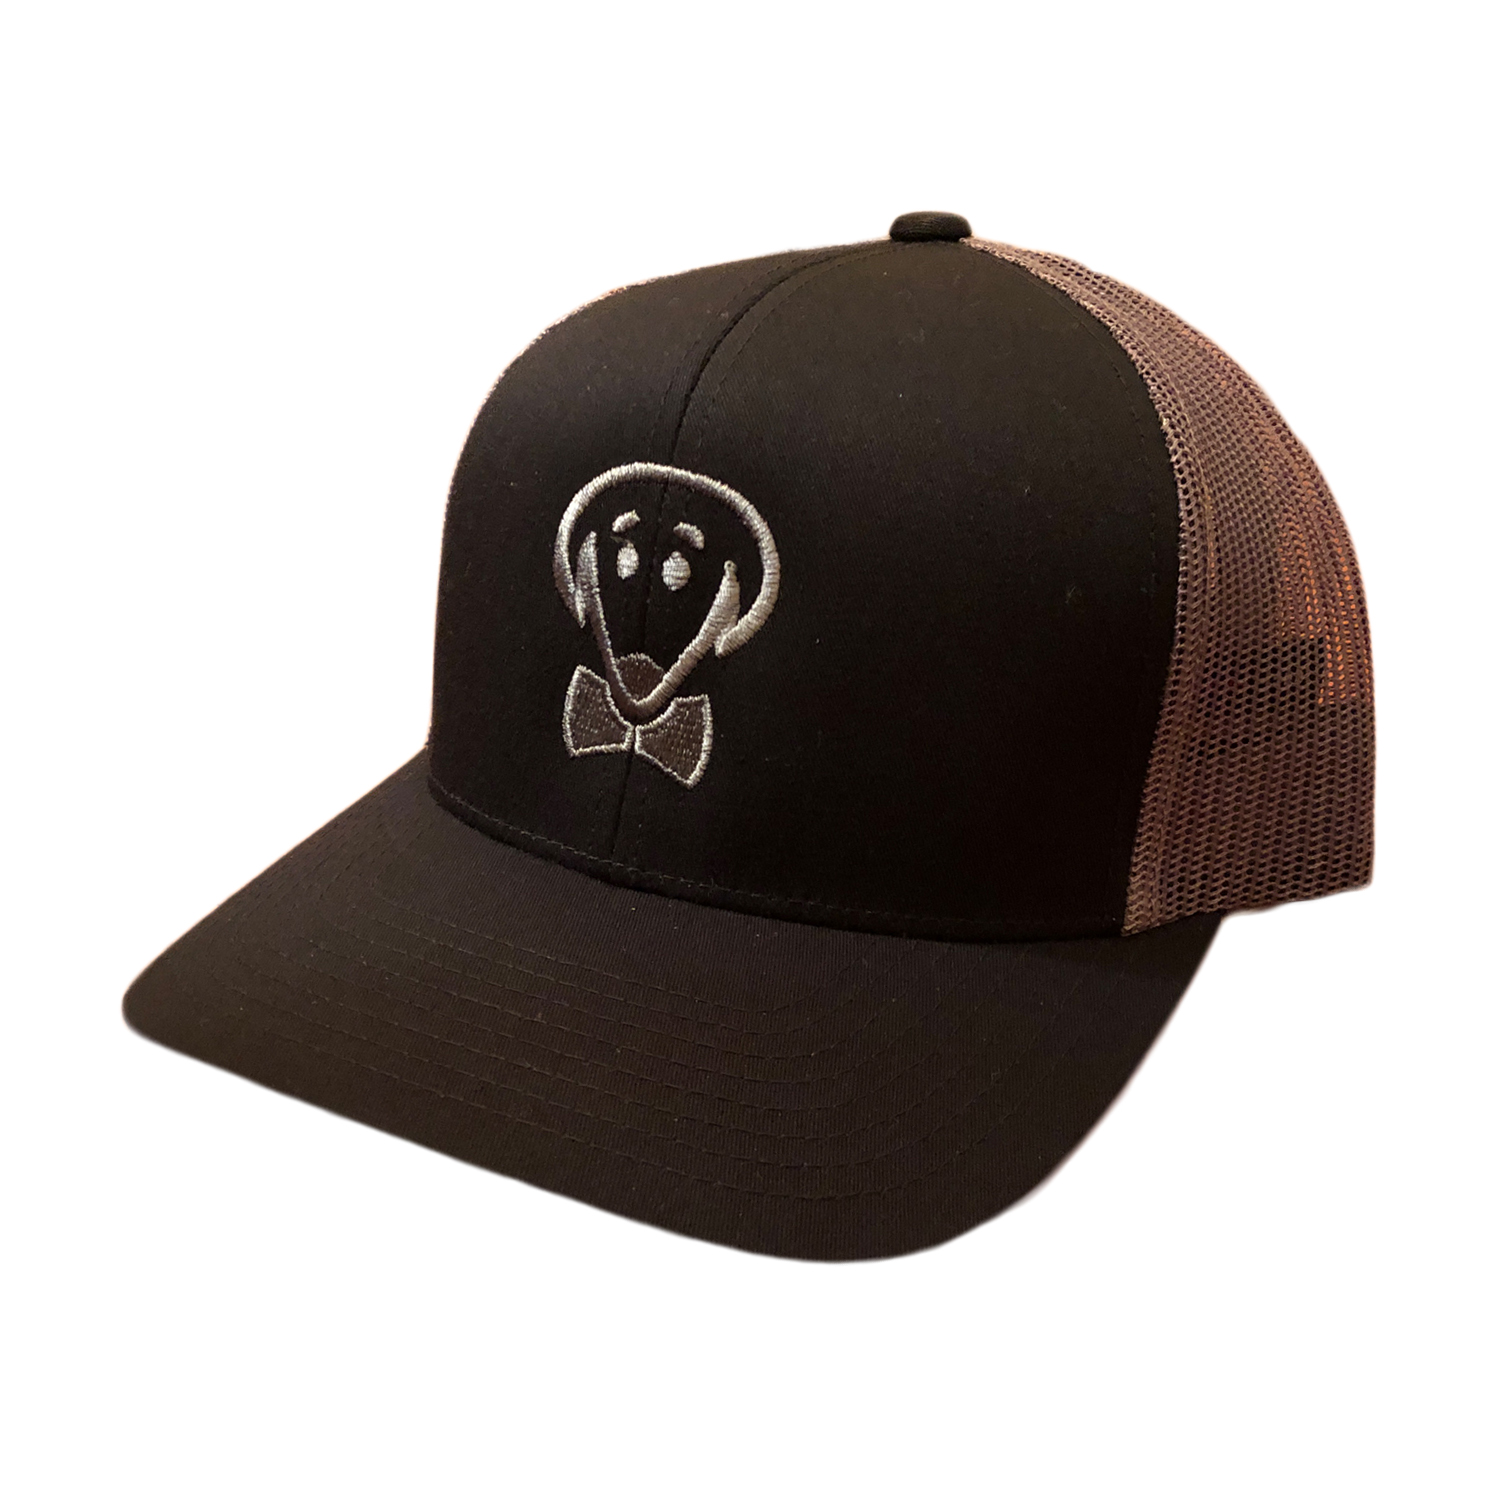 Beau Tyler - Alternate Duke baseball hat gray temp2